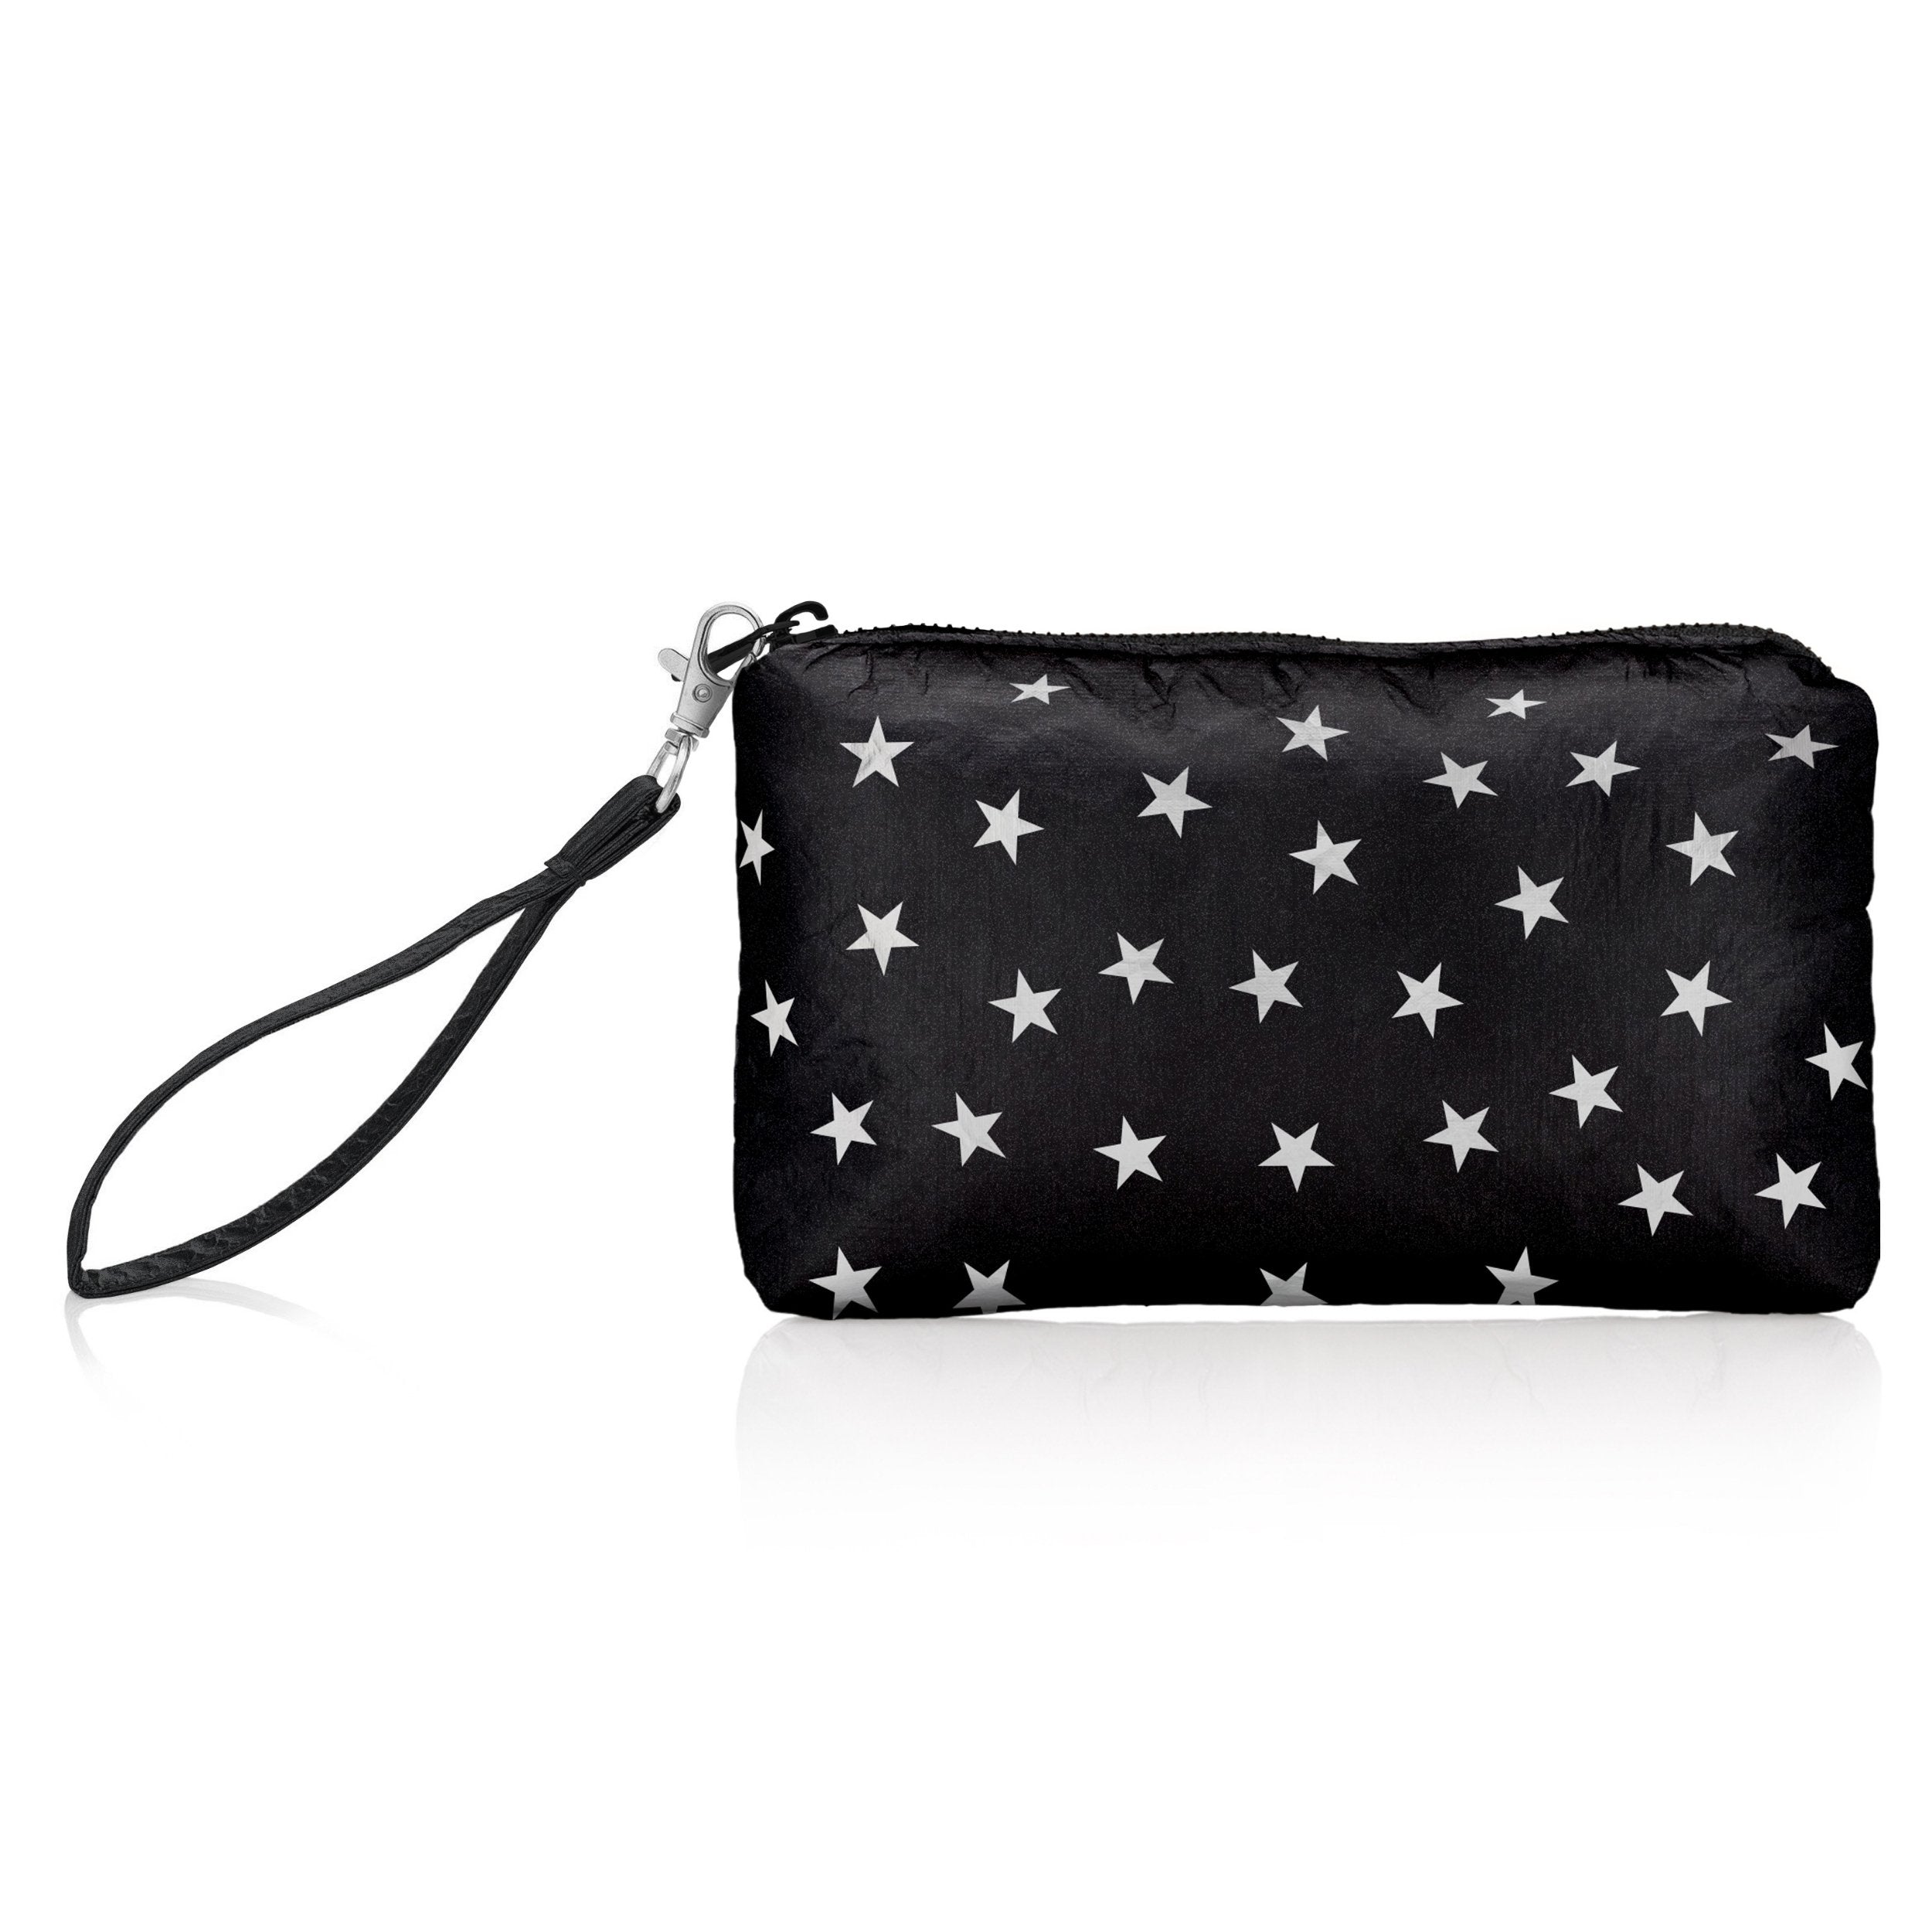 Buy MKF 2-PC Set Tote Satchel Bag for Women & Wristlet Wallet Purse: PU  Leather Handbag Pocketbook, Shoulder Strap Black at Amazon.in